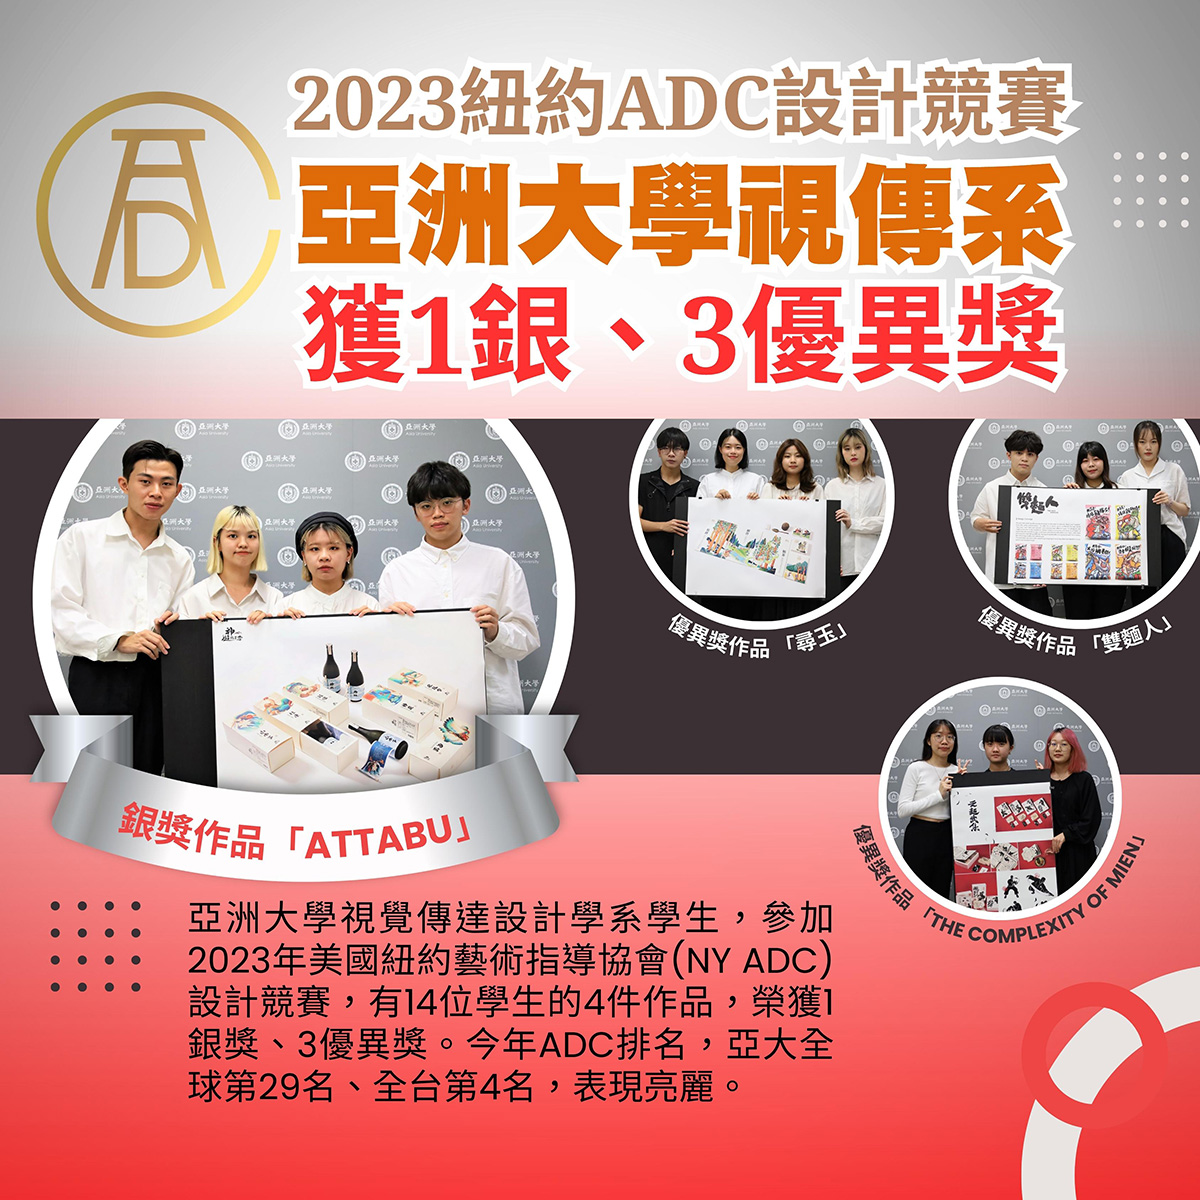 2023紐約ADC設計競賽 亞洲大學視傳系獲1銀、3優異獎